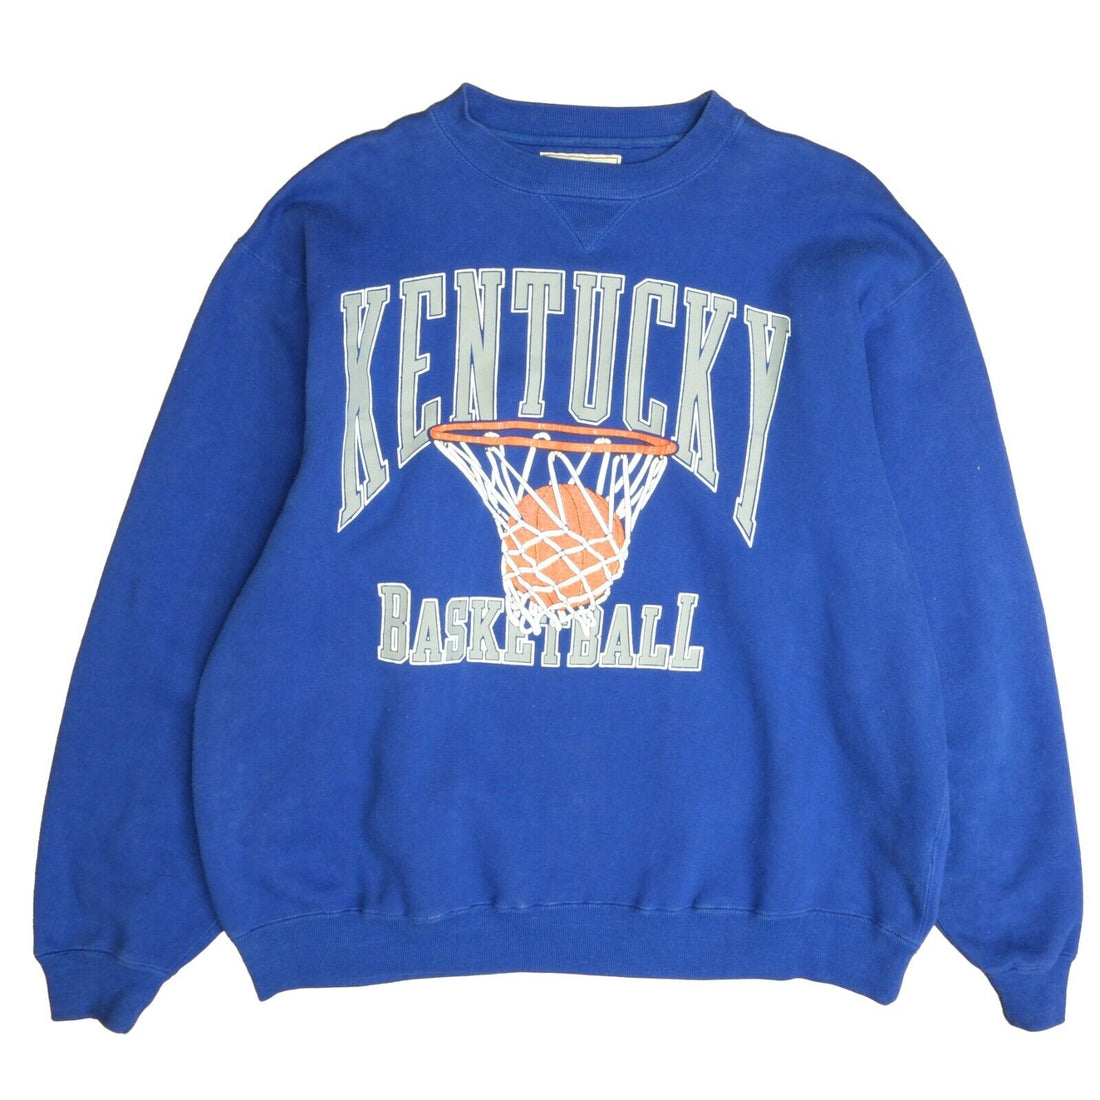 Vintage Kentucky Wildcats Basketball Sweatshirt Crewneck Size XL 90s NCAA